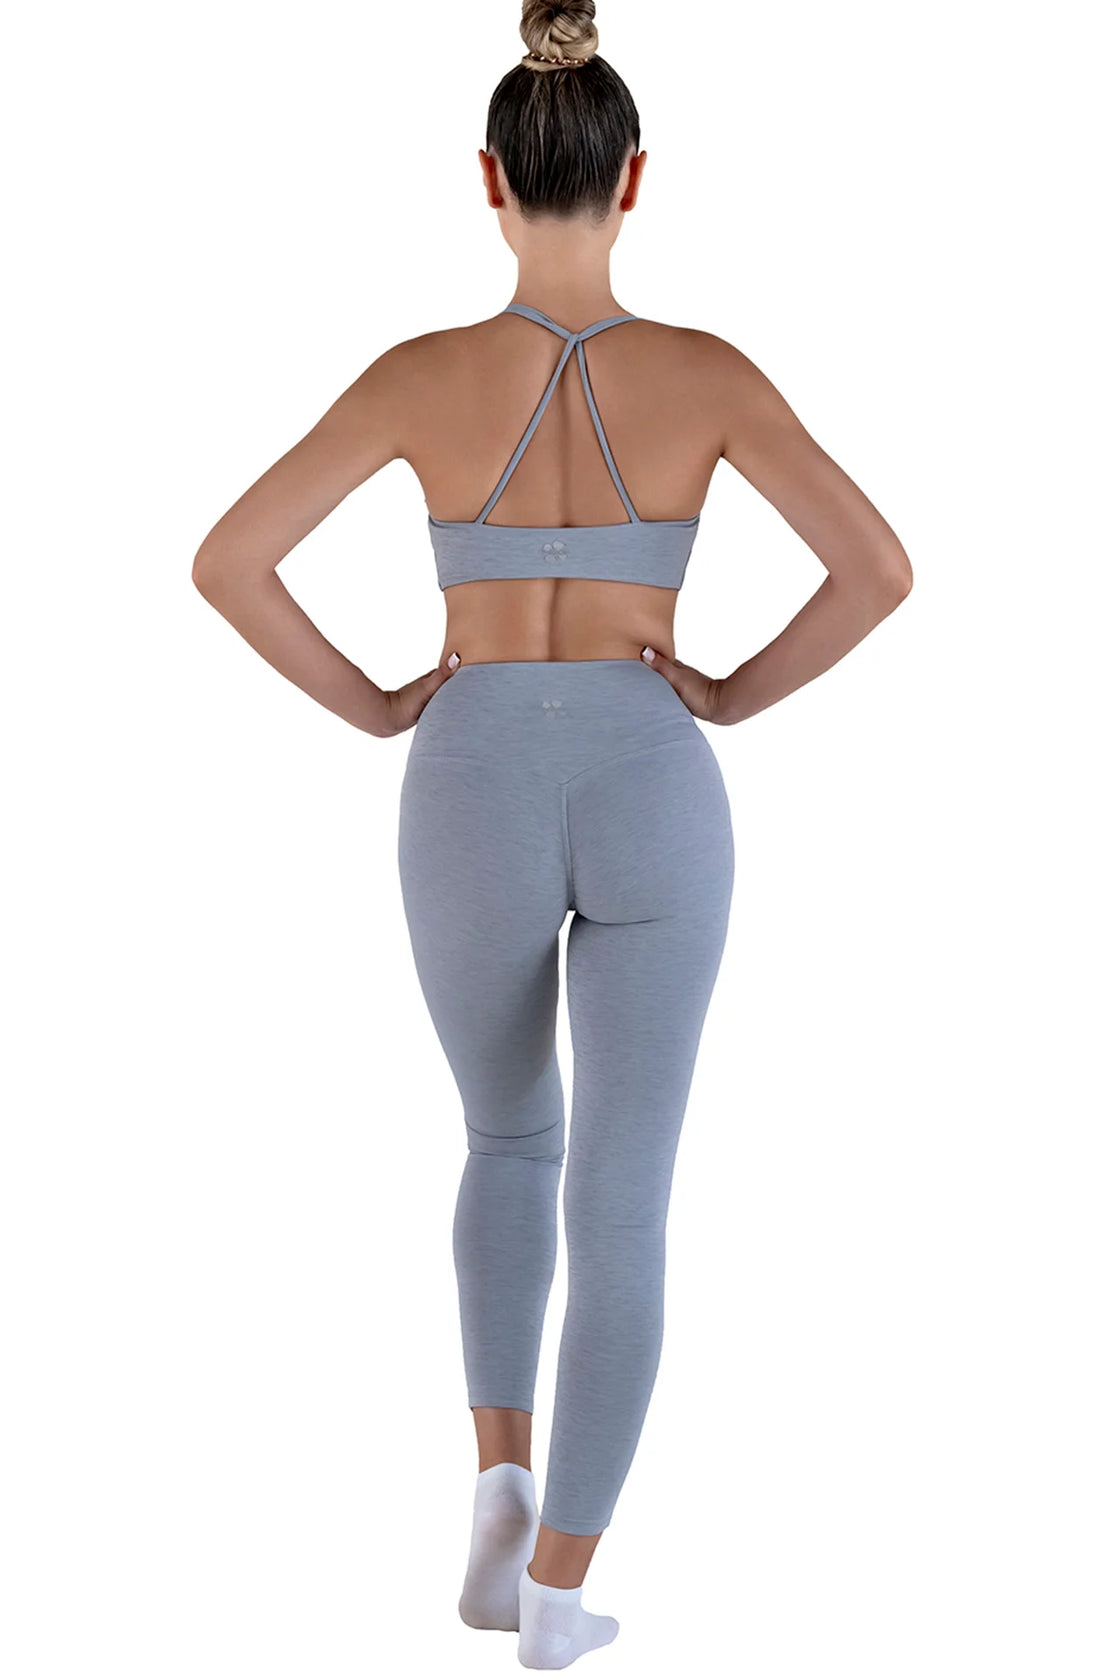 Light grey leggings set for women